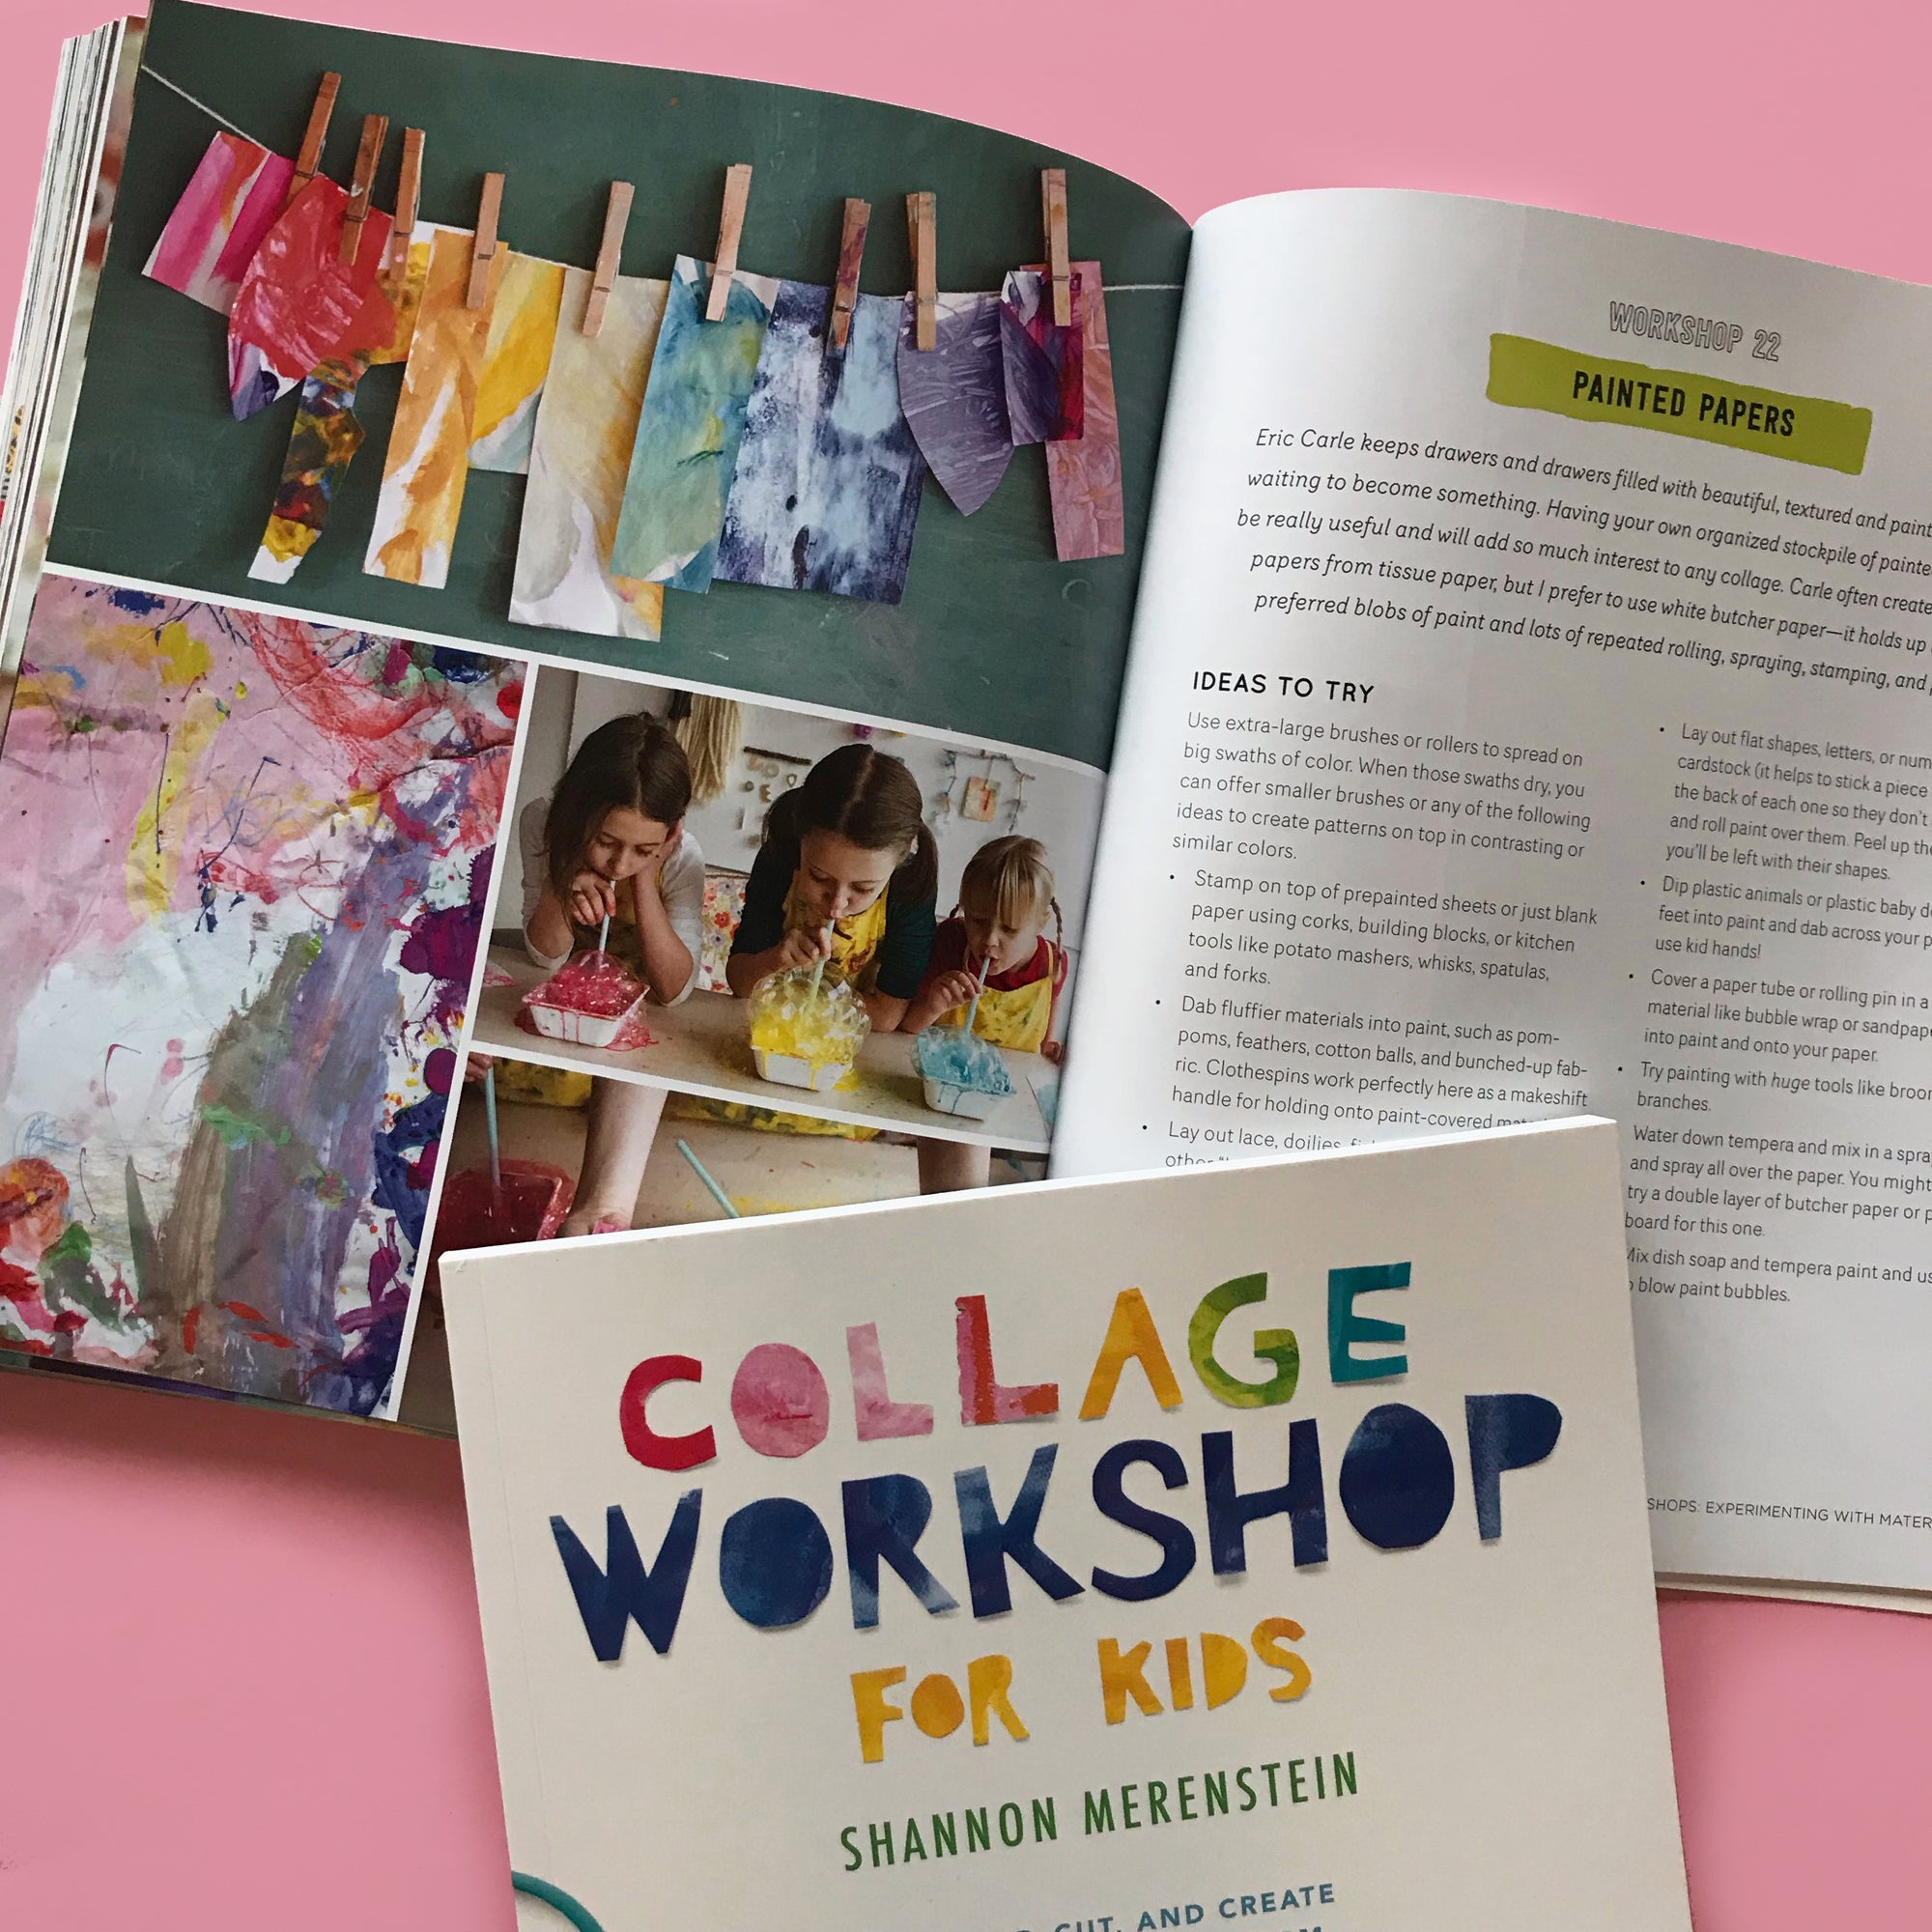 Collage Workshop For Kids